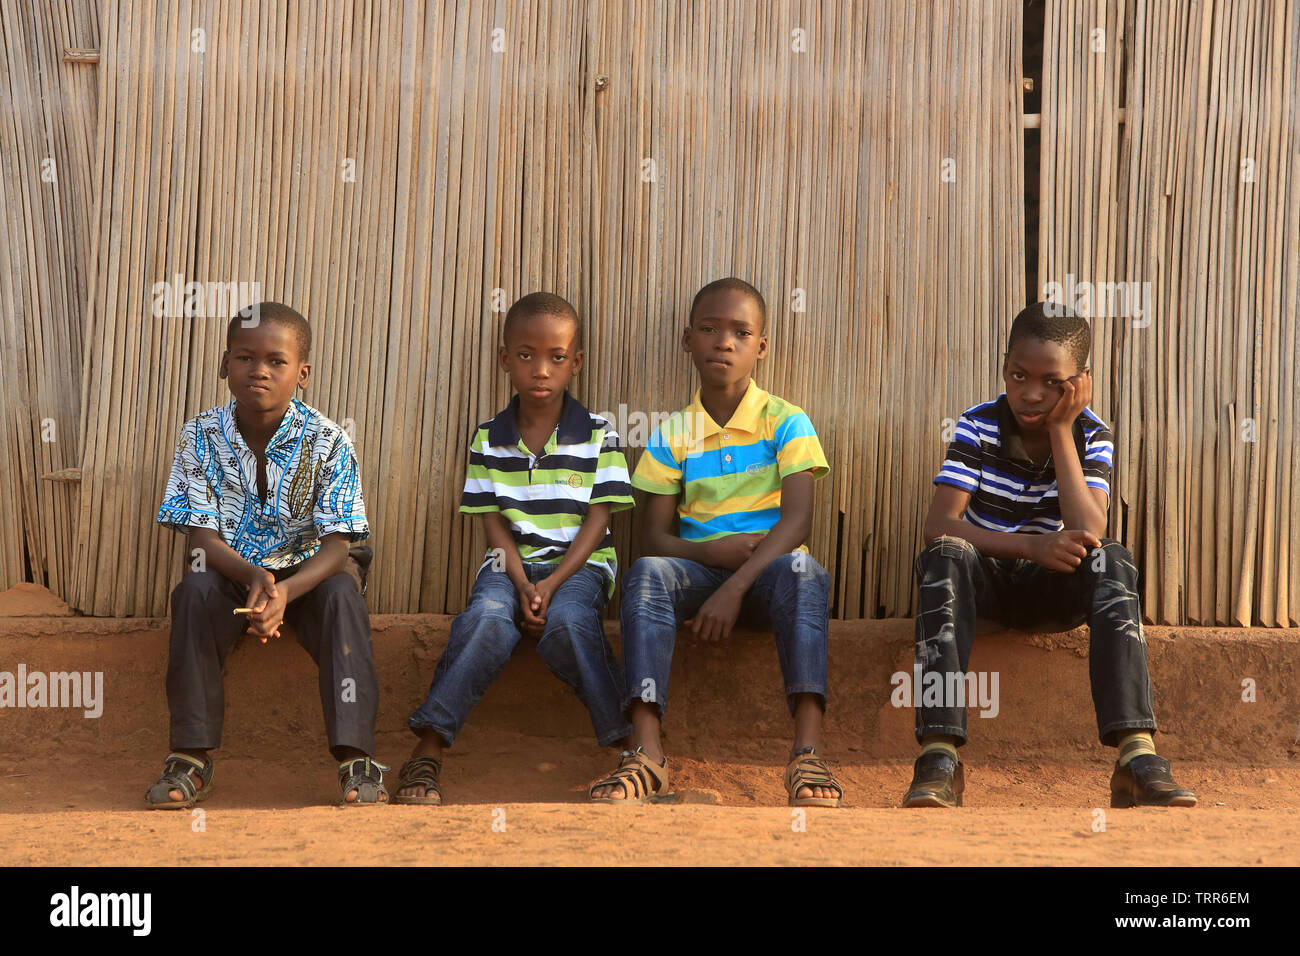 Jeunes enfants togolais assis sur un muret. Atakpamé. Le Togo. Afrique de l'Ouest. Banque D'Images